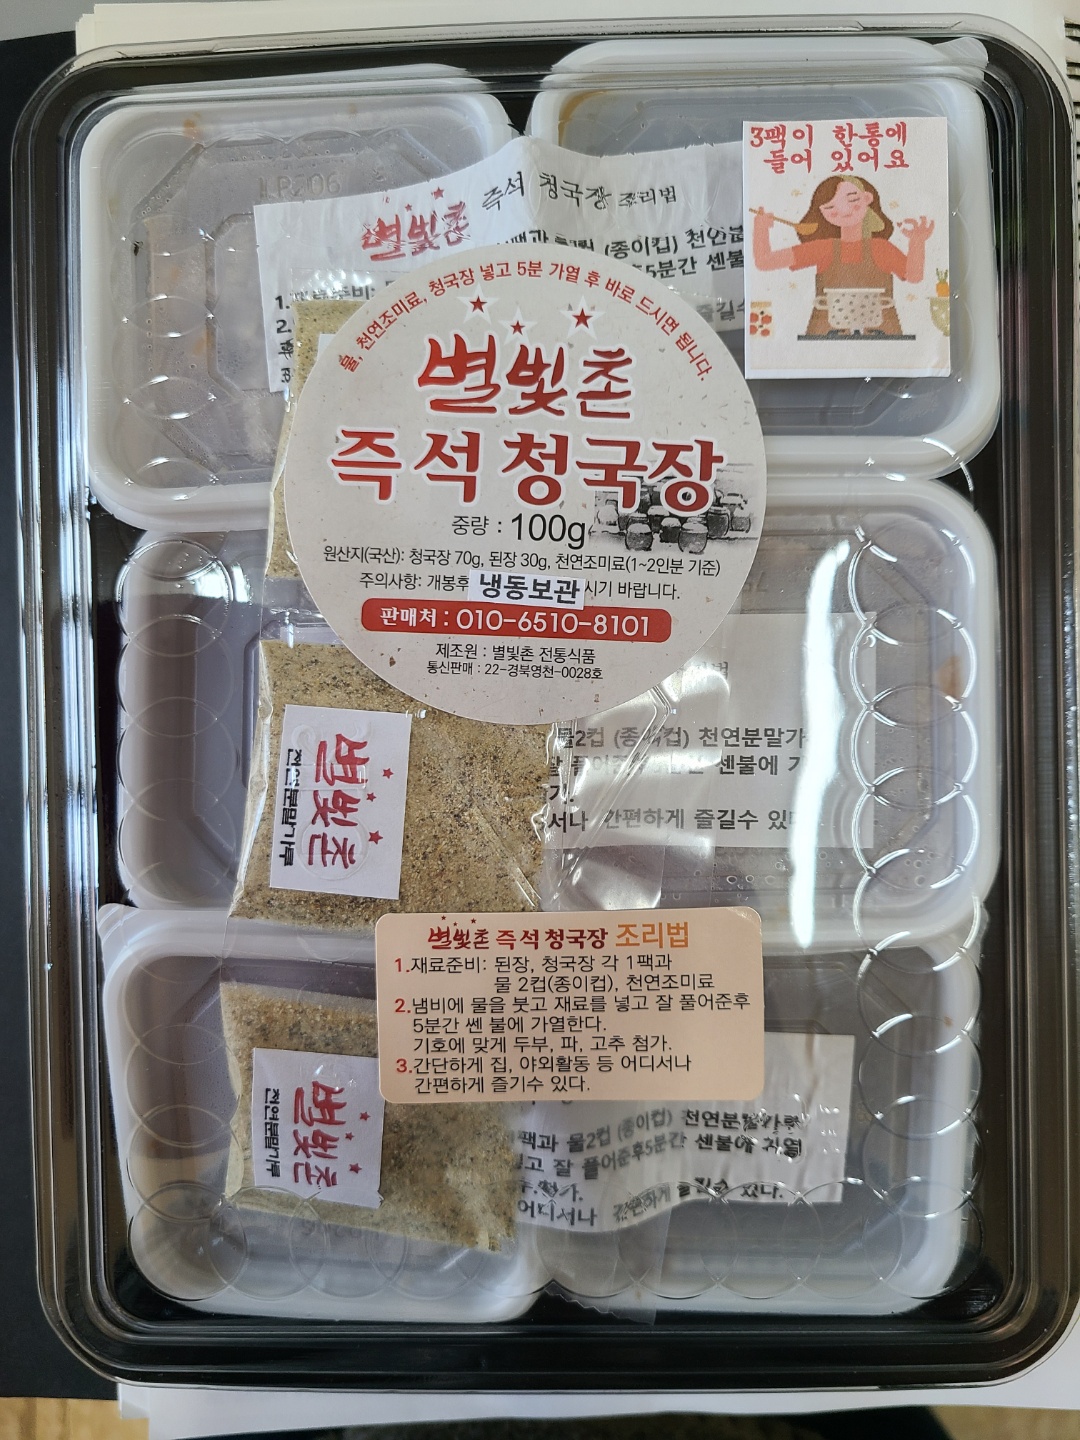 [별빛촌 전통식품] 간편식 즉석청국장 1세트 (밀키트)